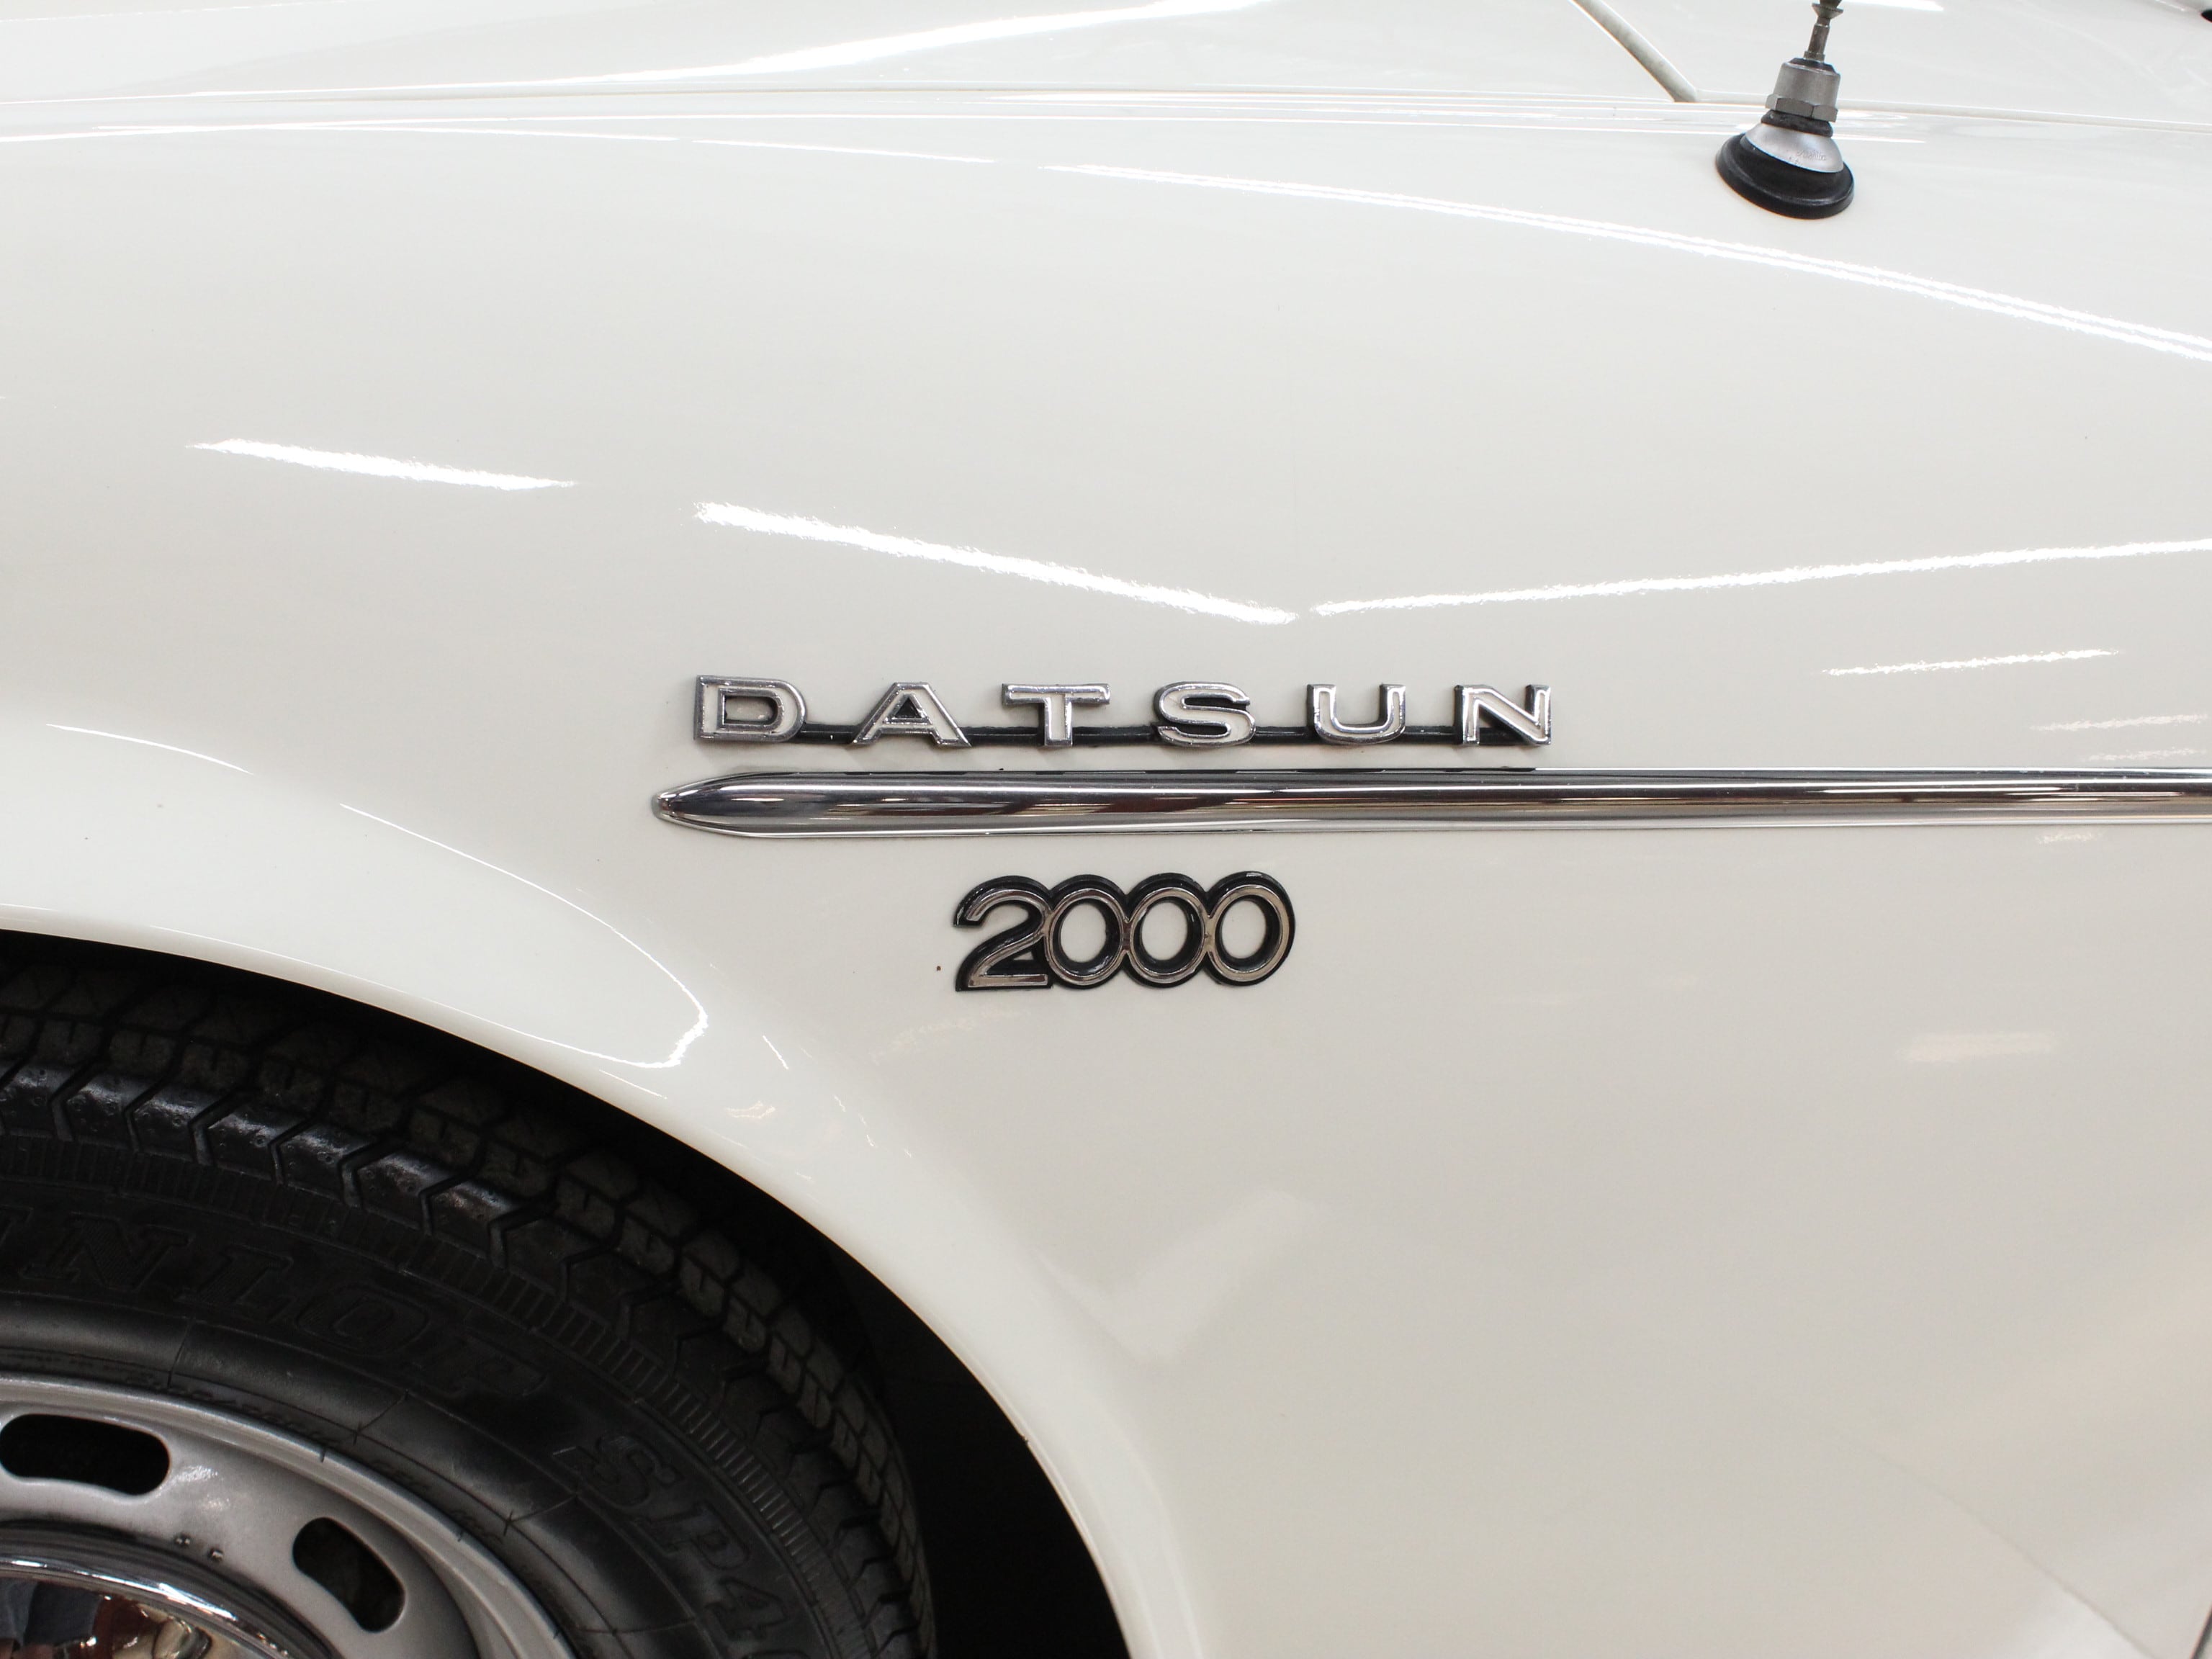 1969 Datsun 2000 51